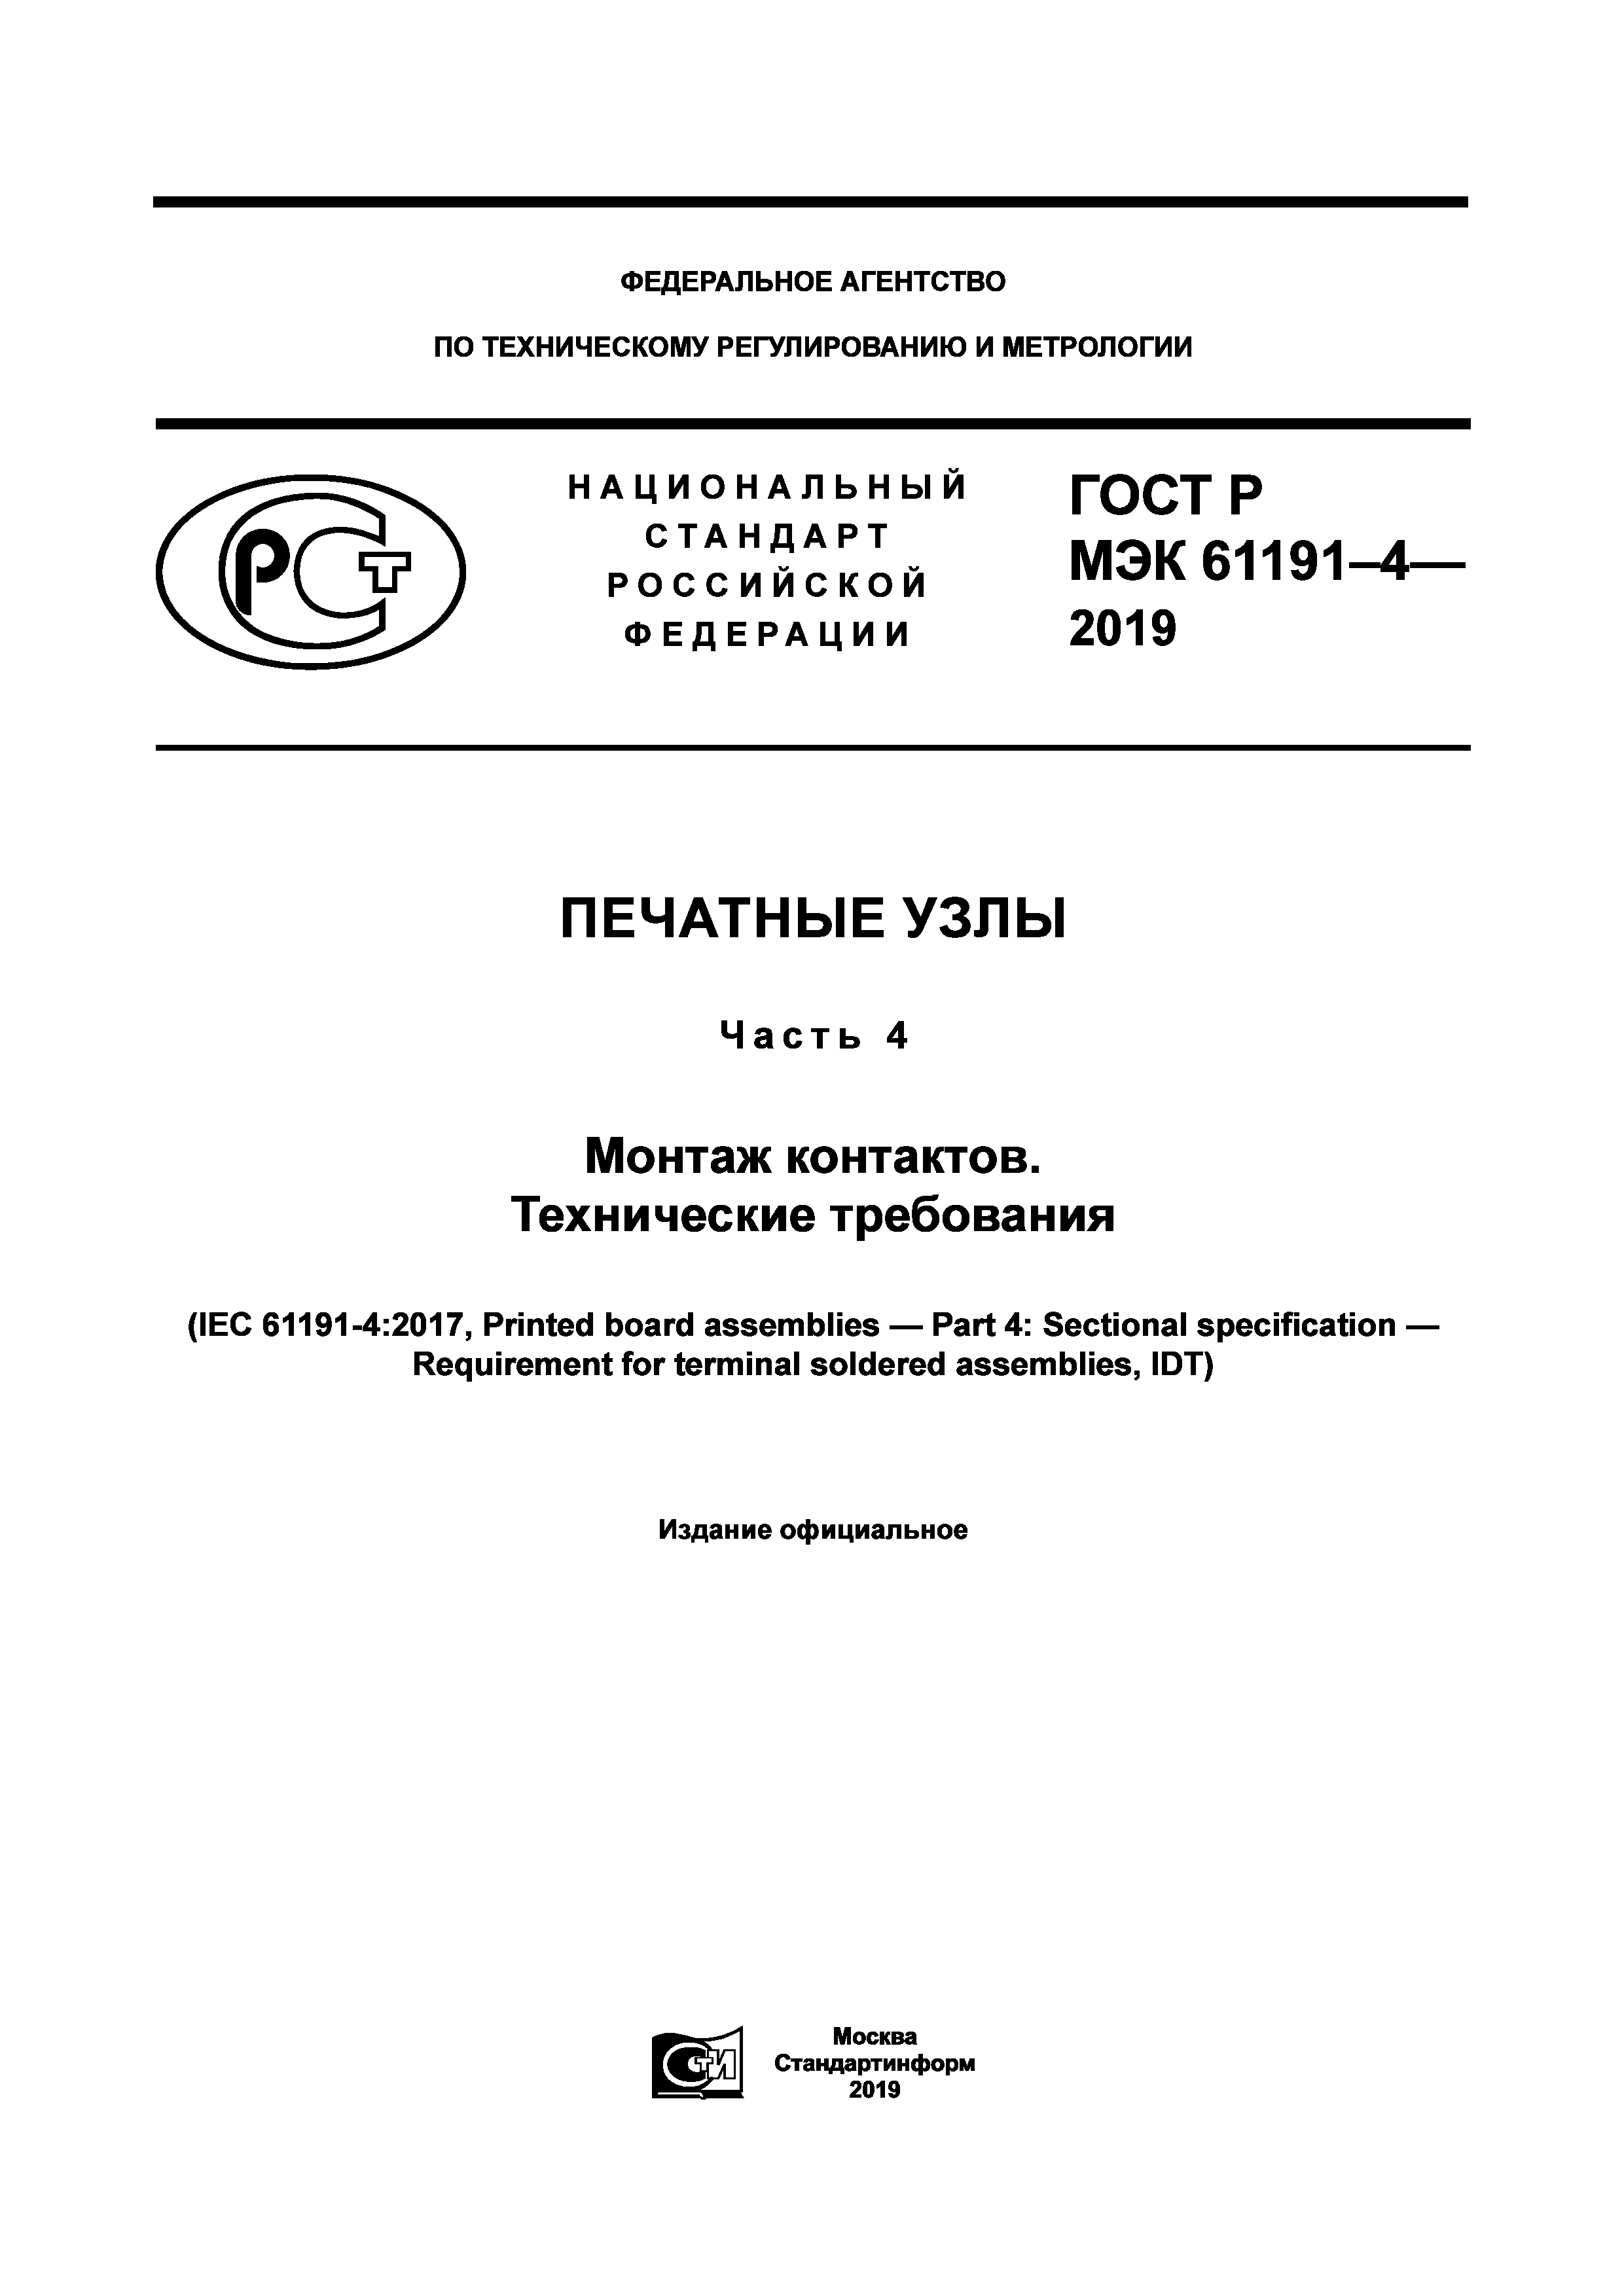 ГОСТ Р МЭК 61191-4-2019